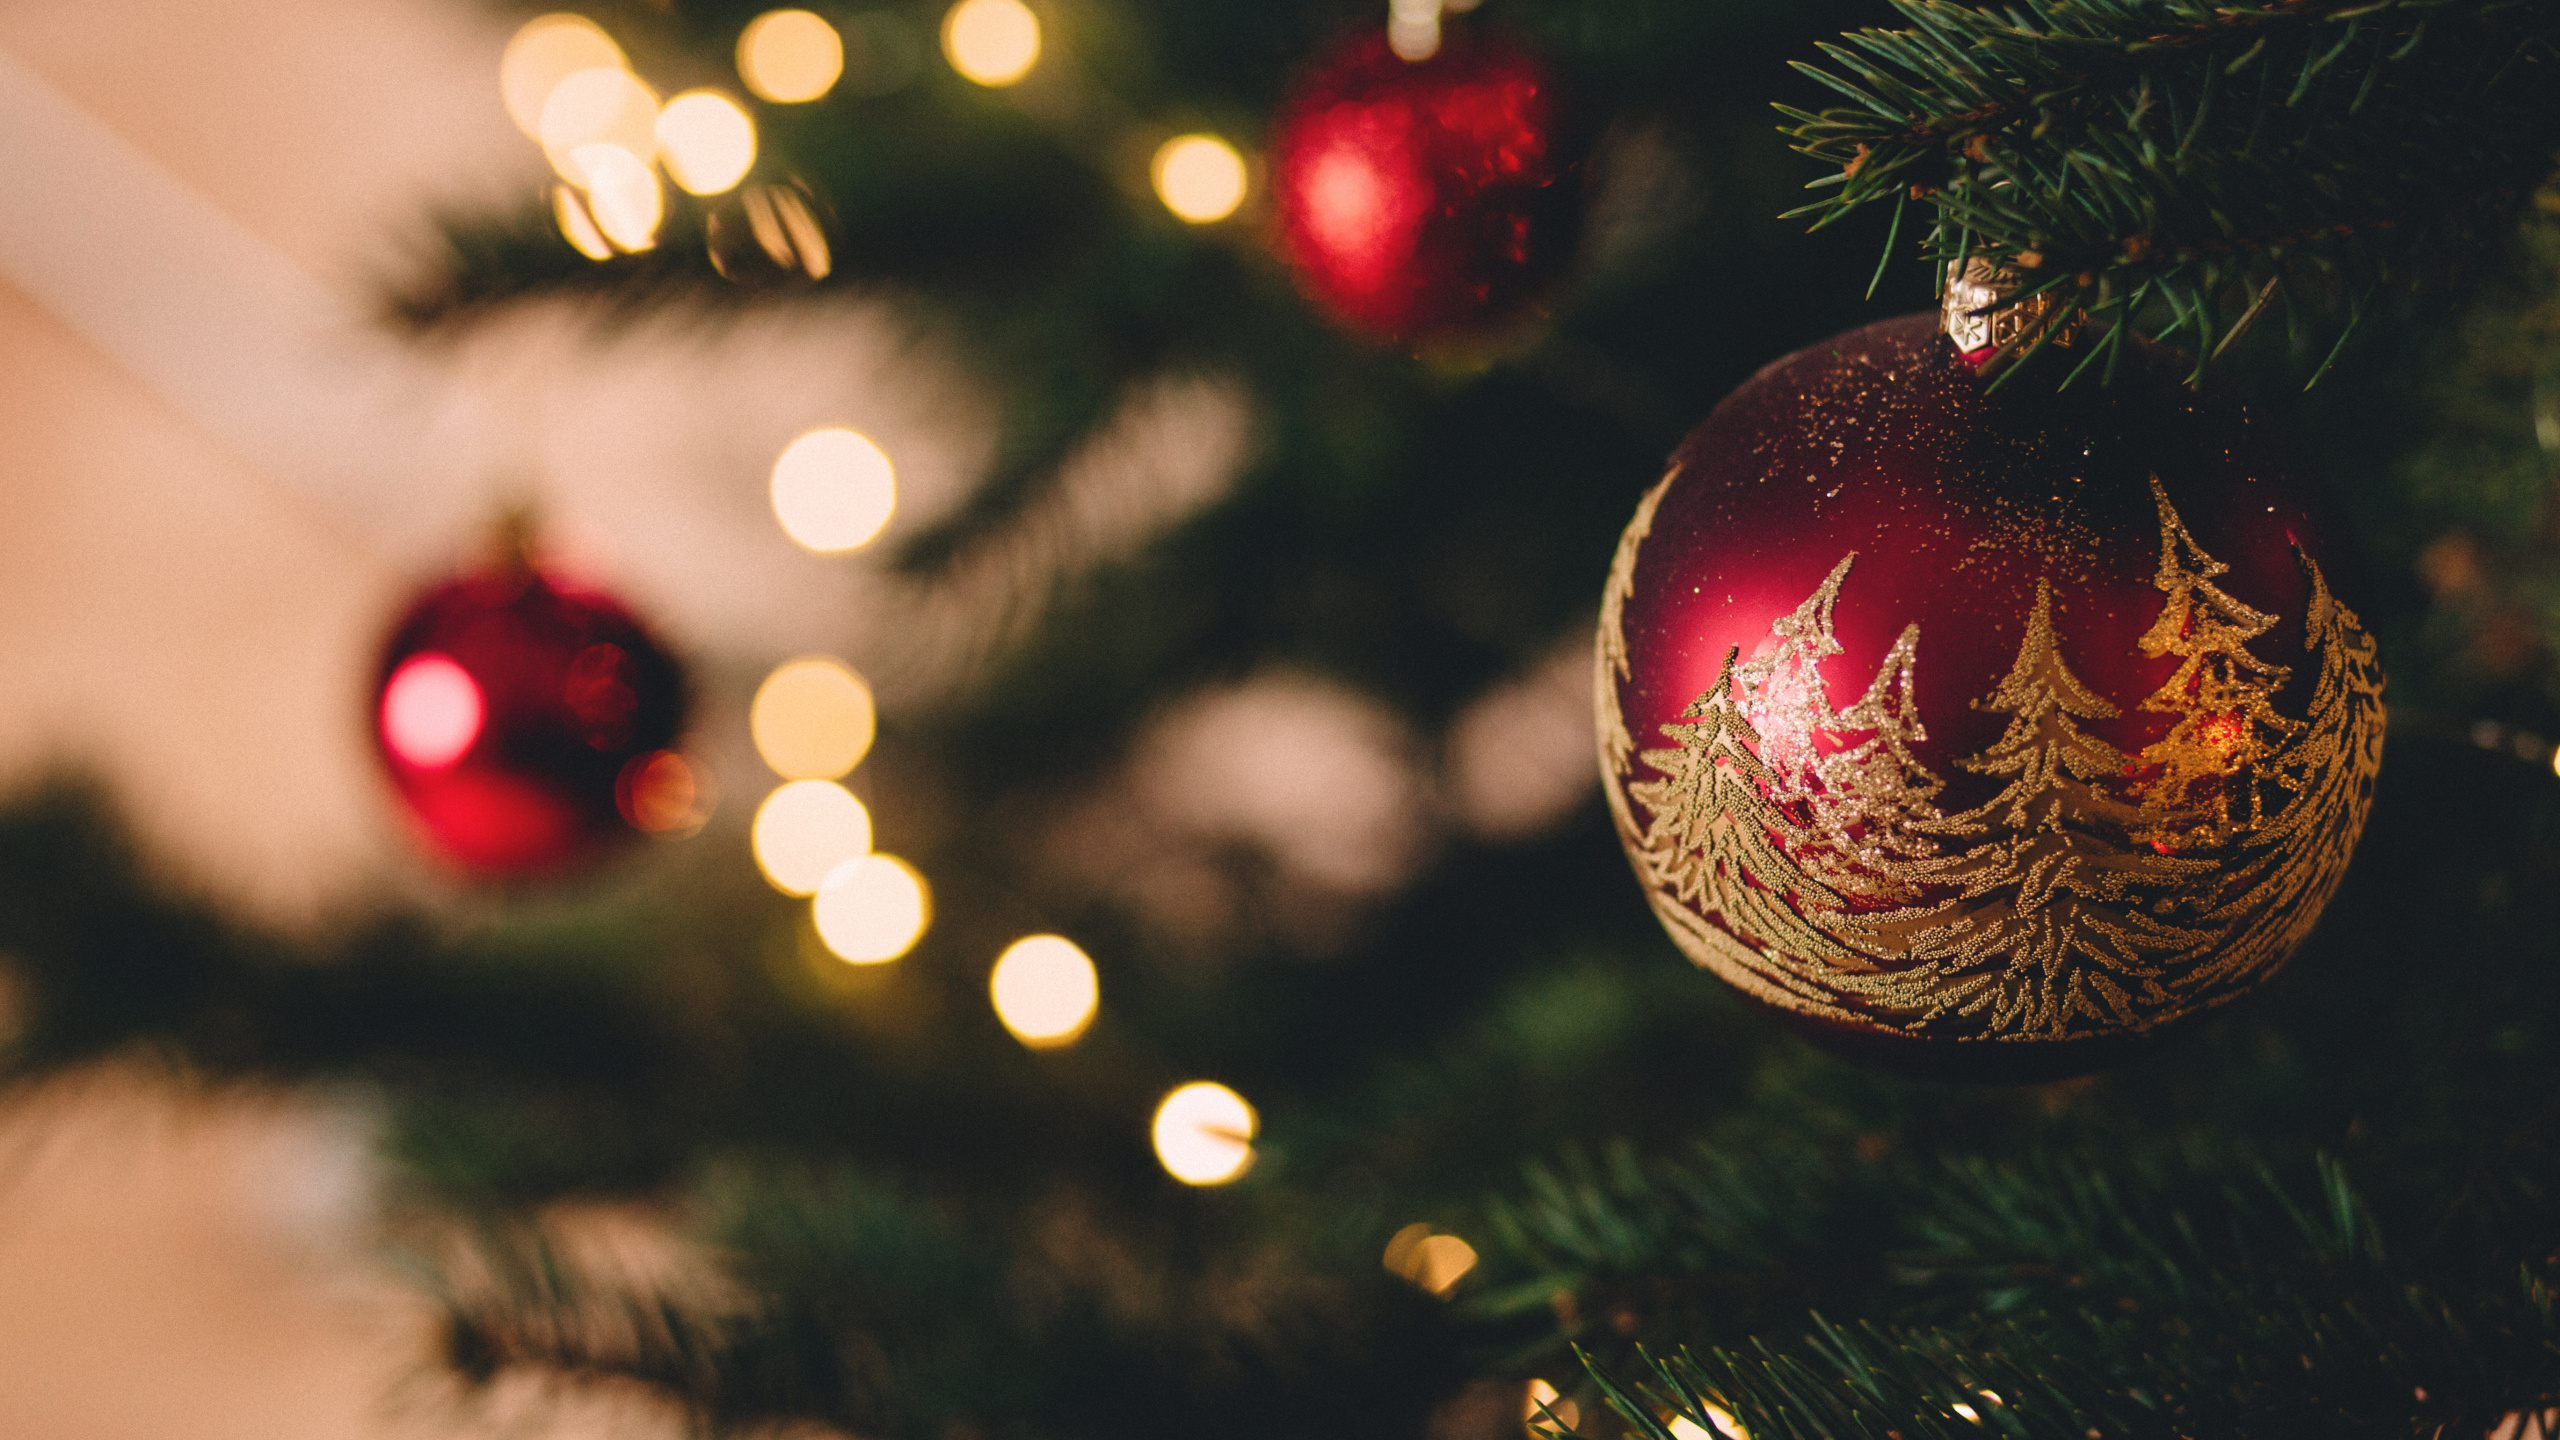 Weihnachten, Weihnachtsbaum, Weihnachtsmann, Christmas Ornament, Baum. Wallpaper in 2560x1440 Resolution